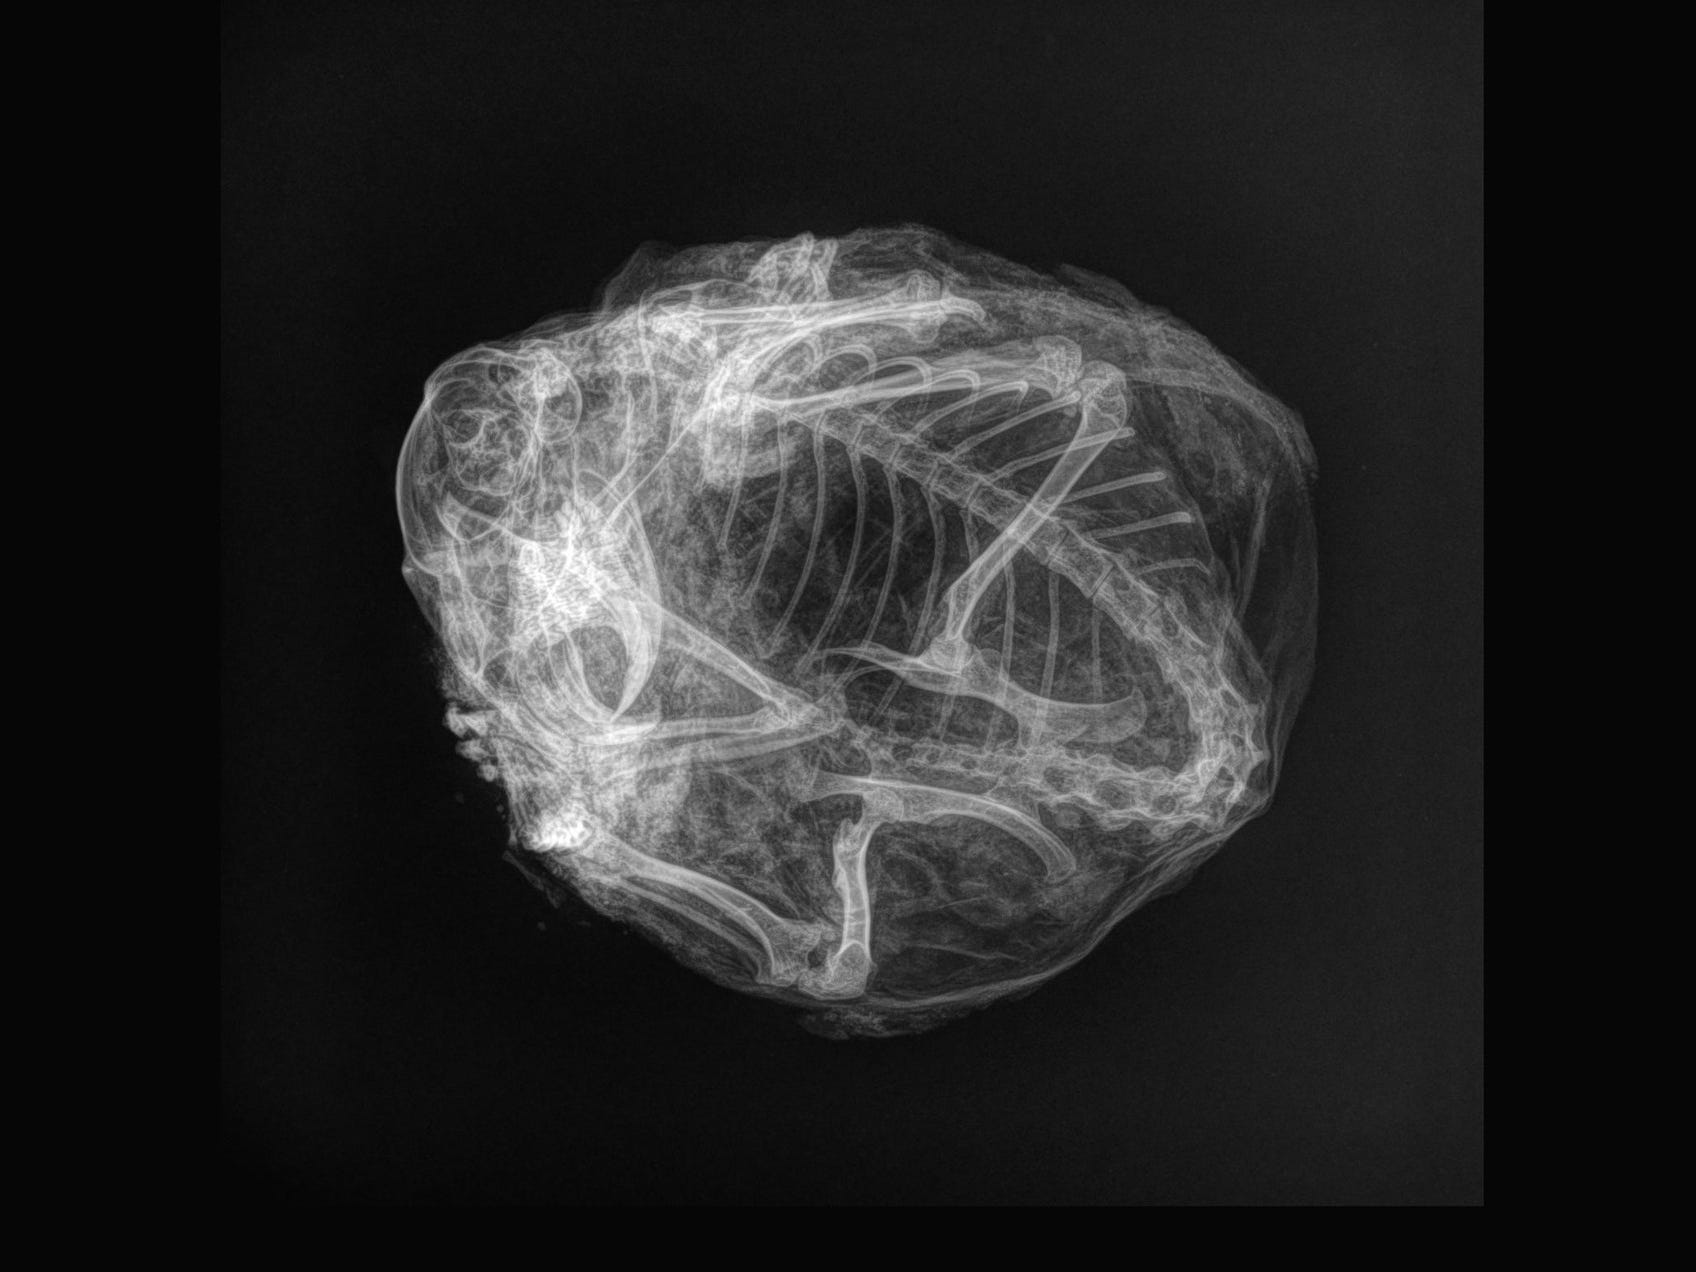 Eine Röntgenaufnahme eines zu einem Kugelkreis zusammengerollten Eichhörnchenskeletts mit hochgeklappten Beinen und sichtbarem Schädel.